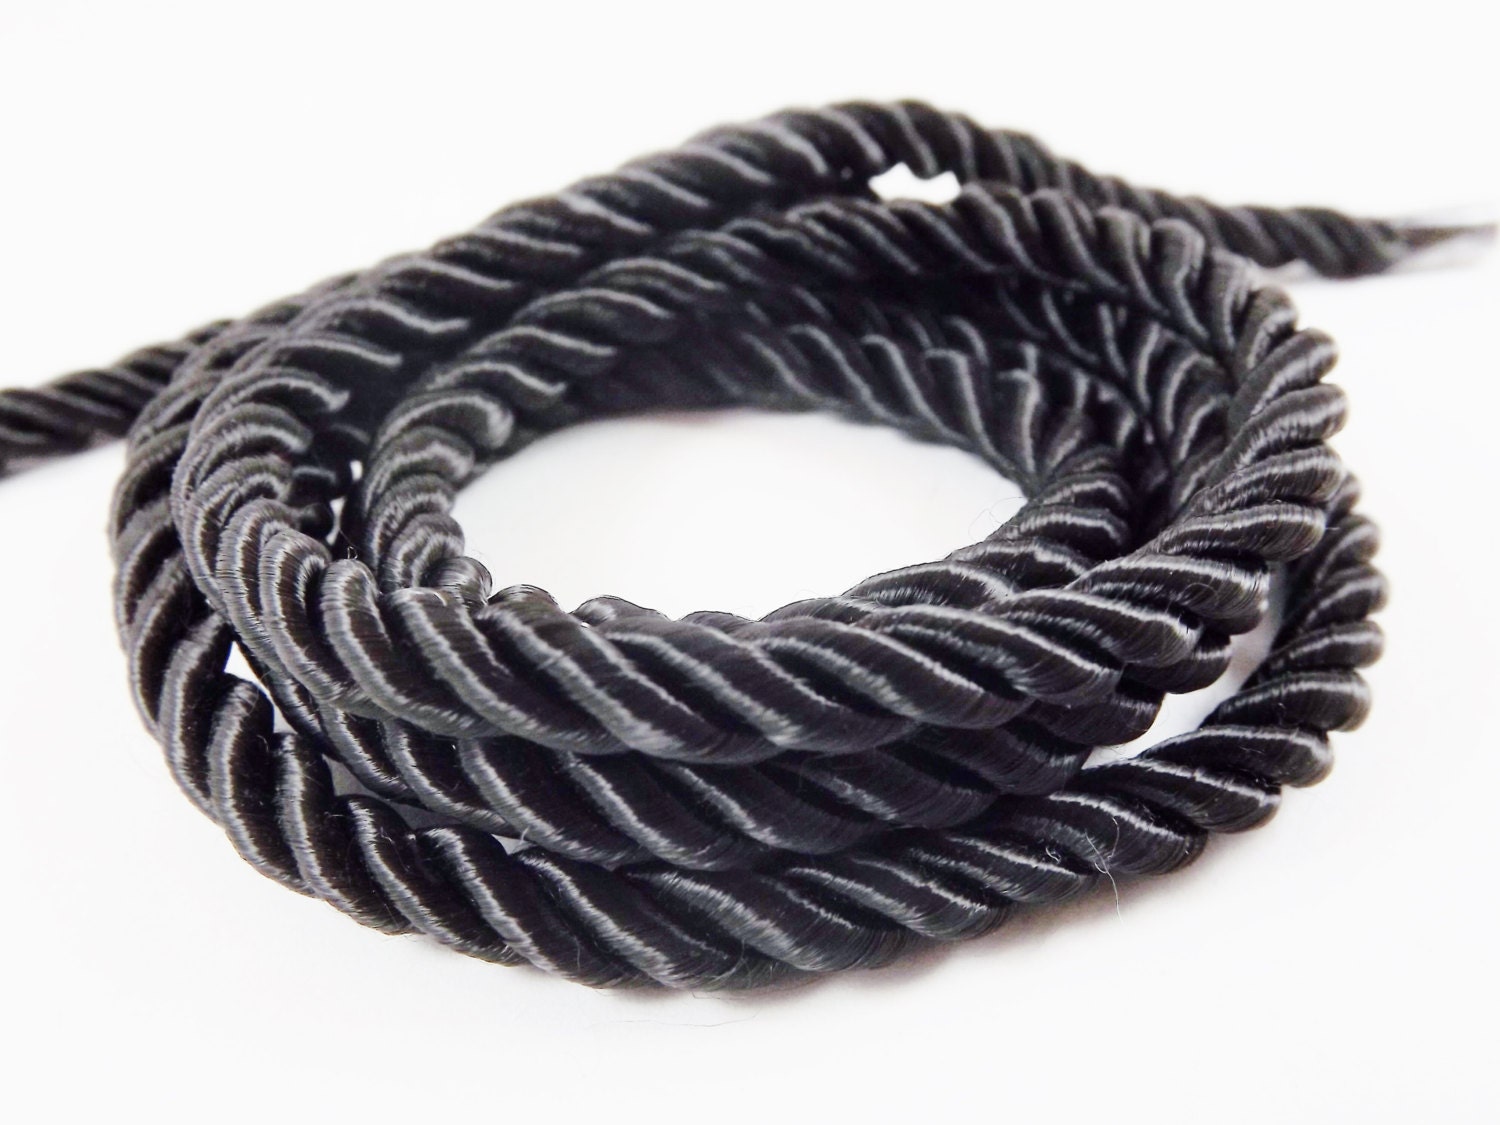 Cuerda negra en espiral foto de archivo. Imagen de entretejido - 33992974